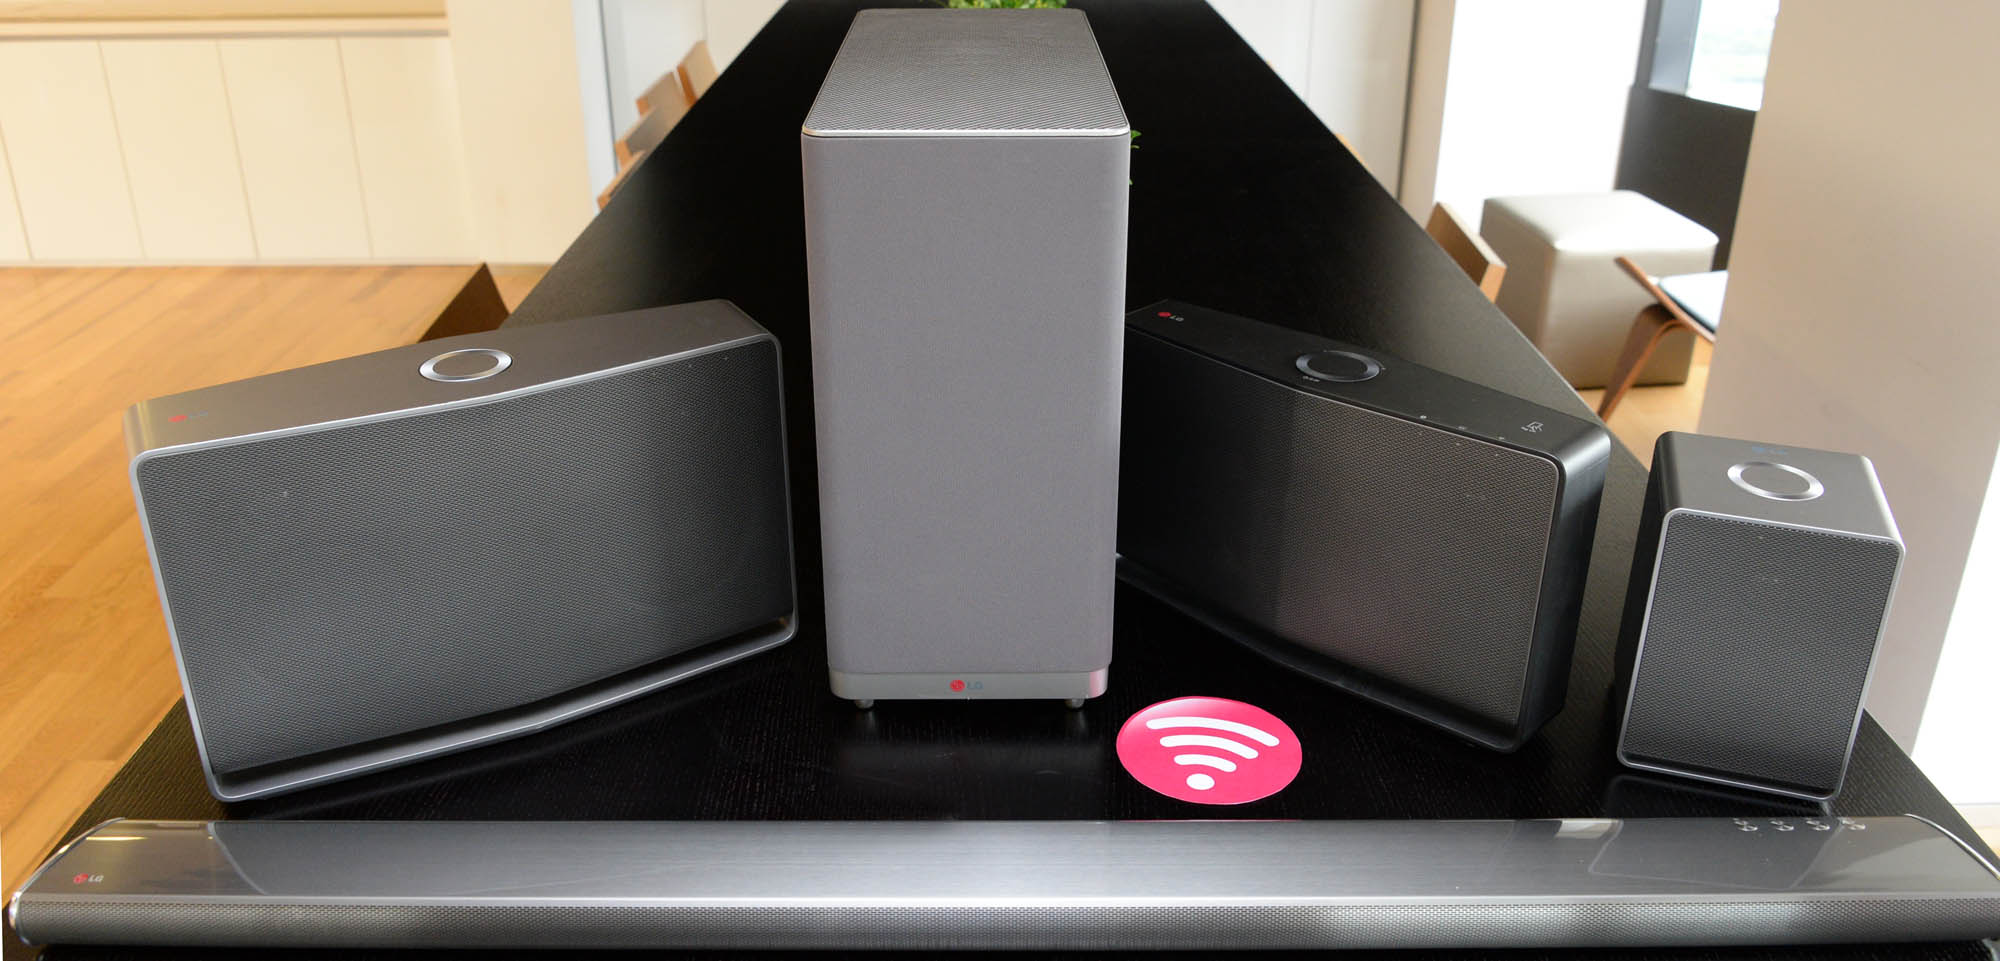  LG: prova il ”Flowing Sound” con la soluzione audio hi-fi multiroom senza fili